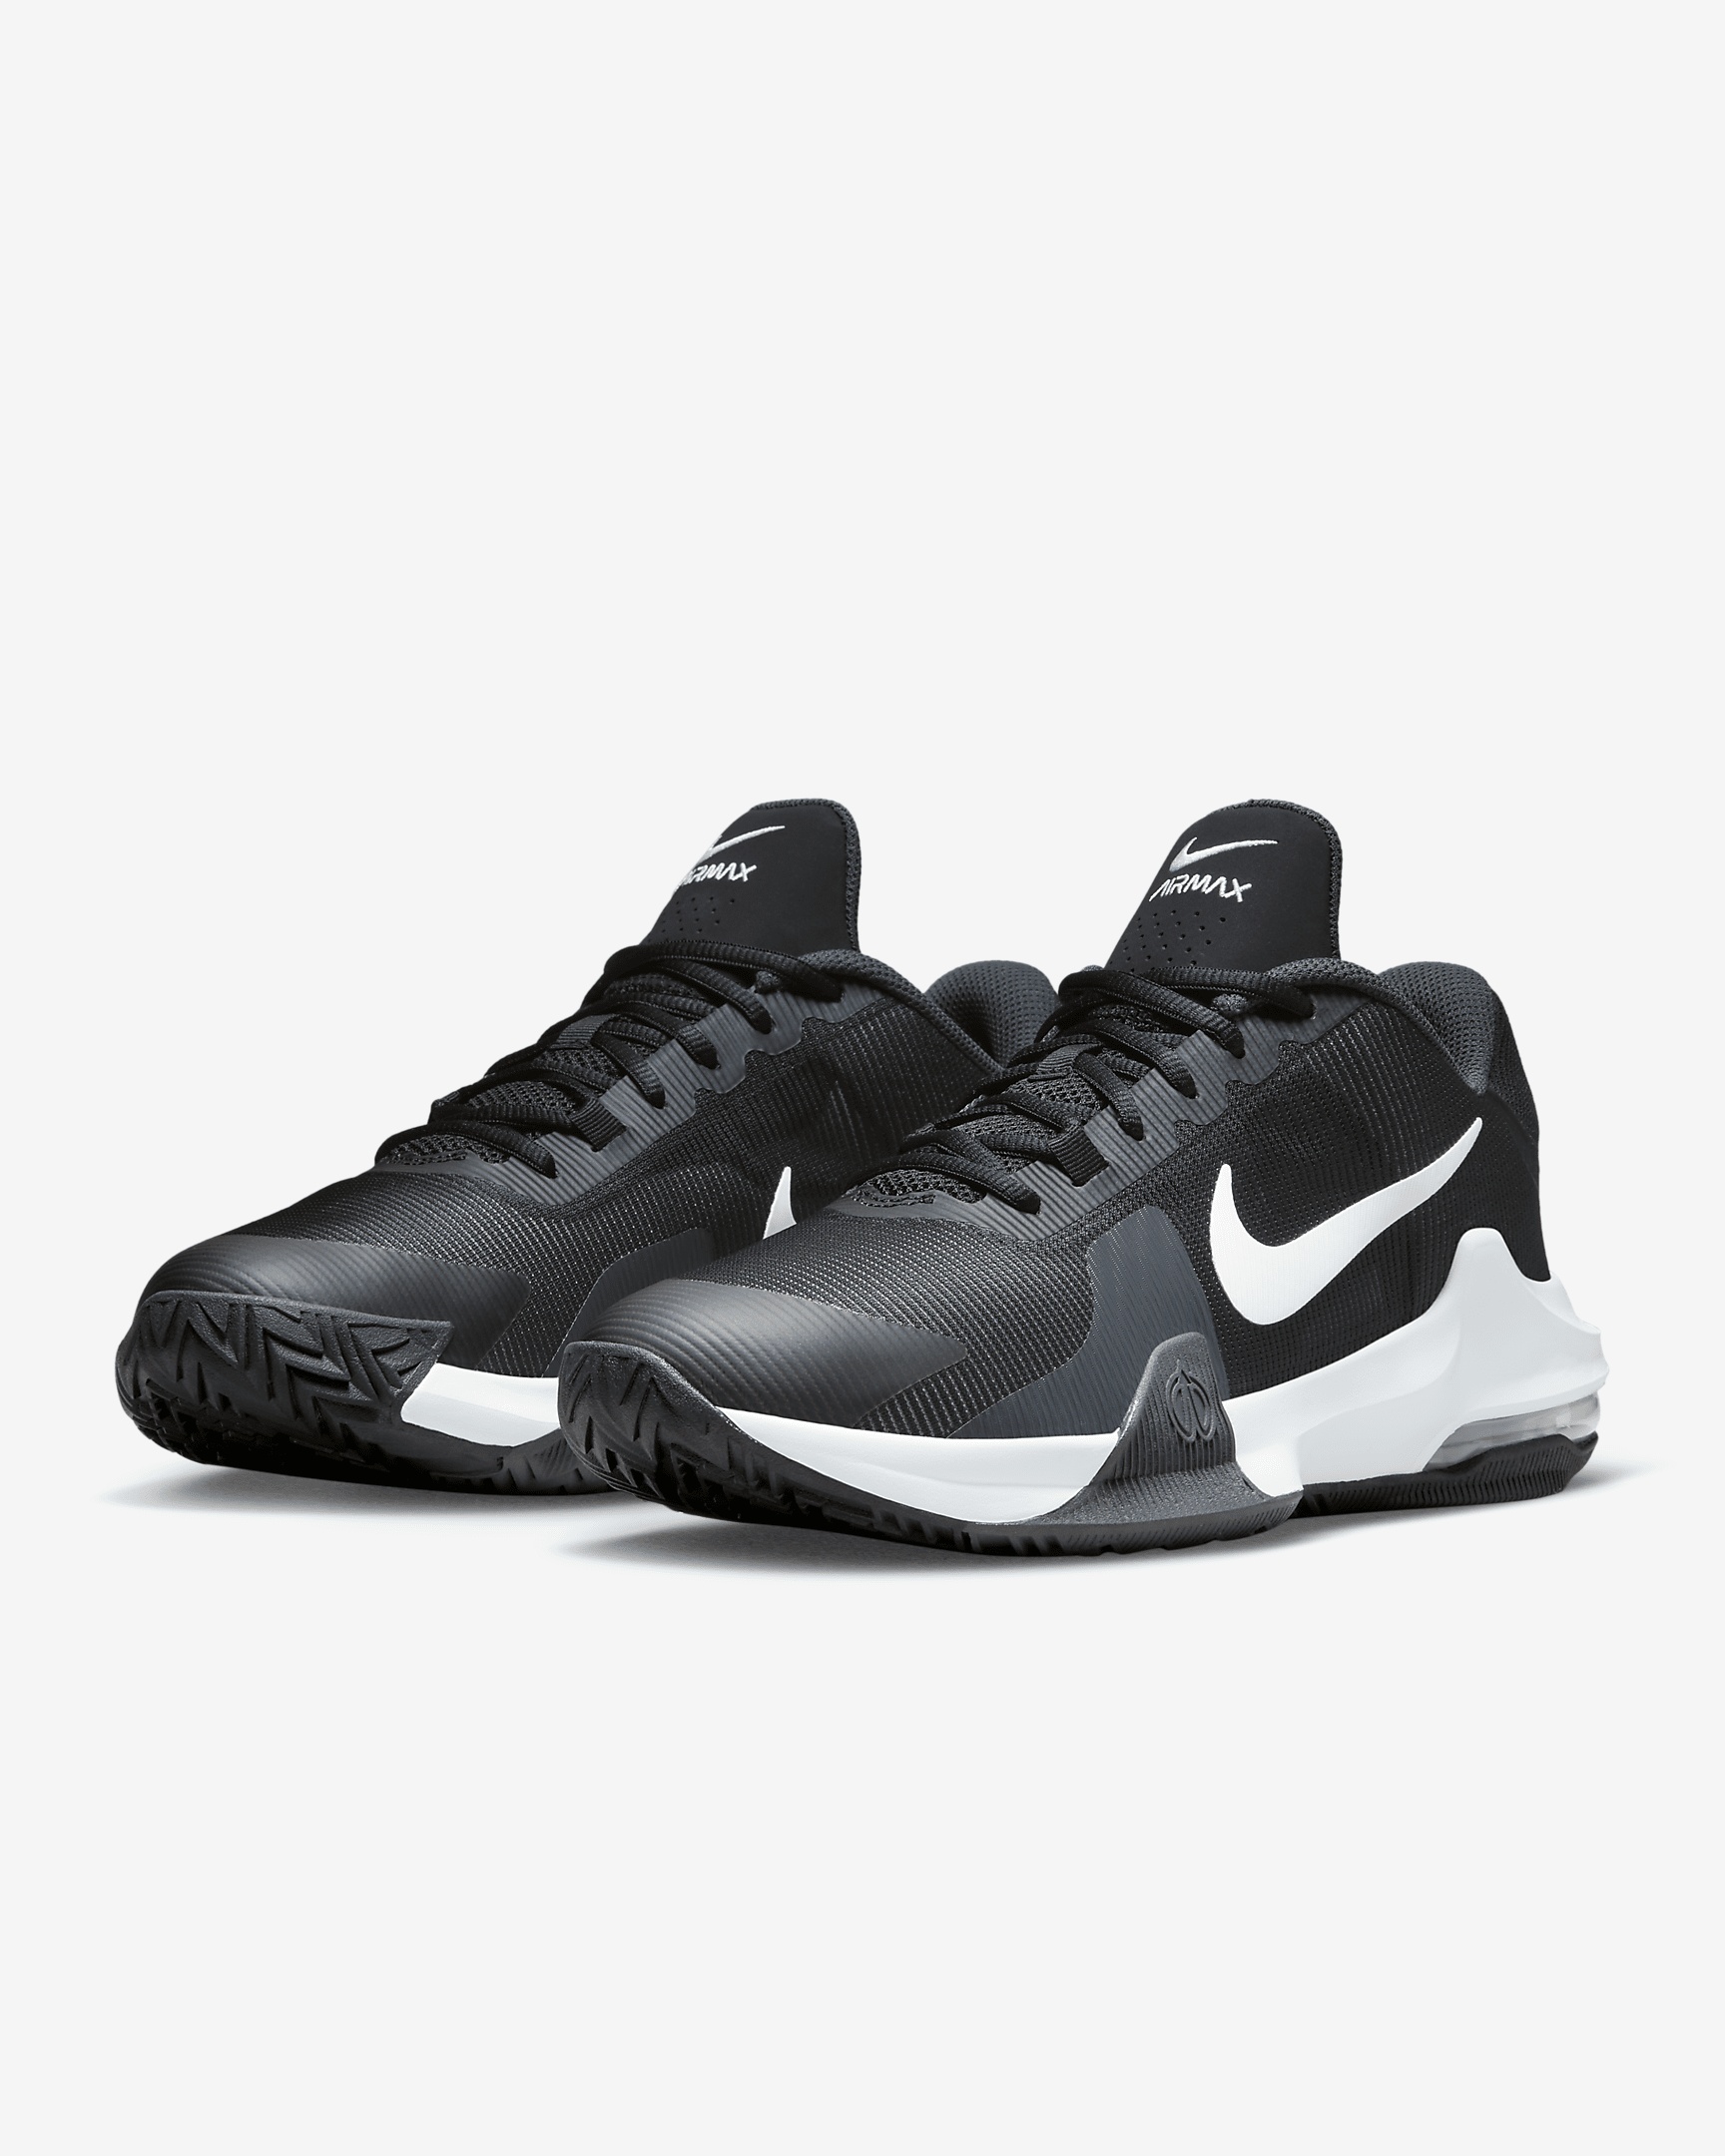 Nike Impact 4 Basketball Shoes - 5